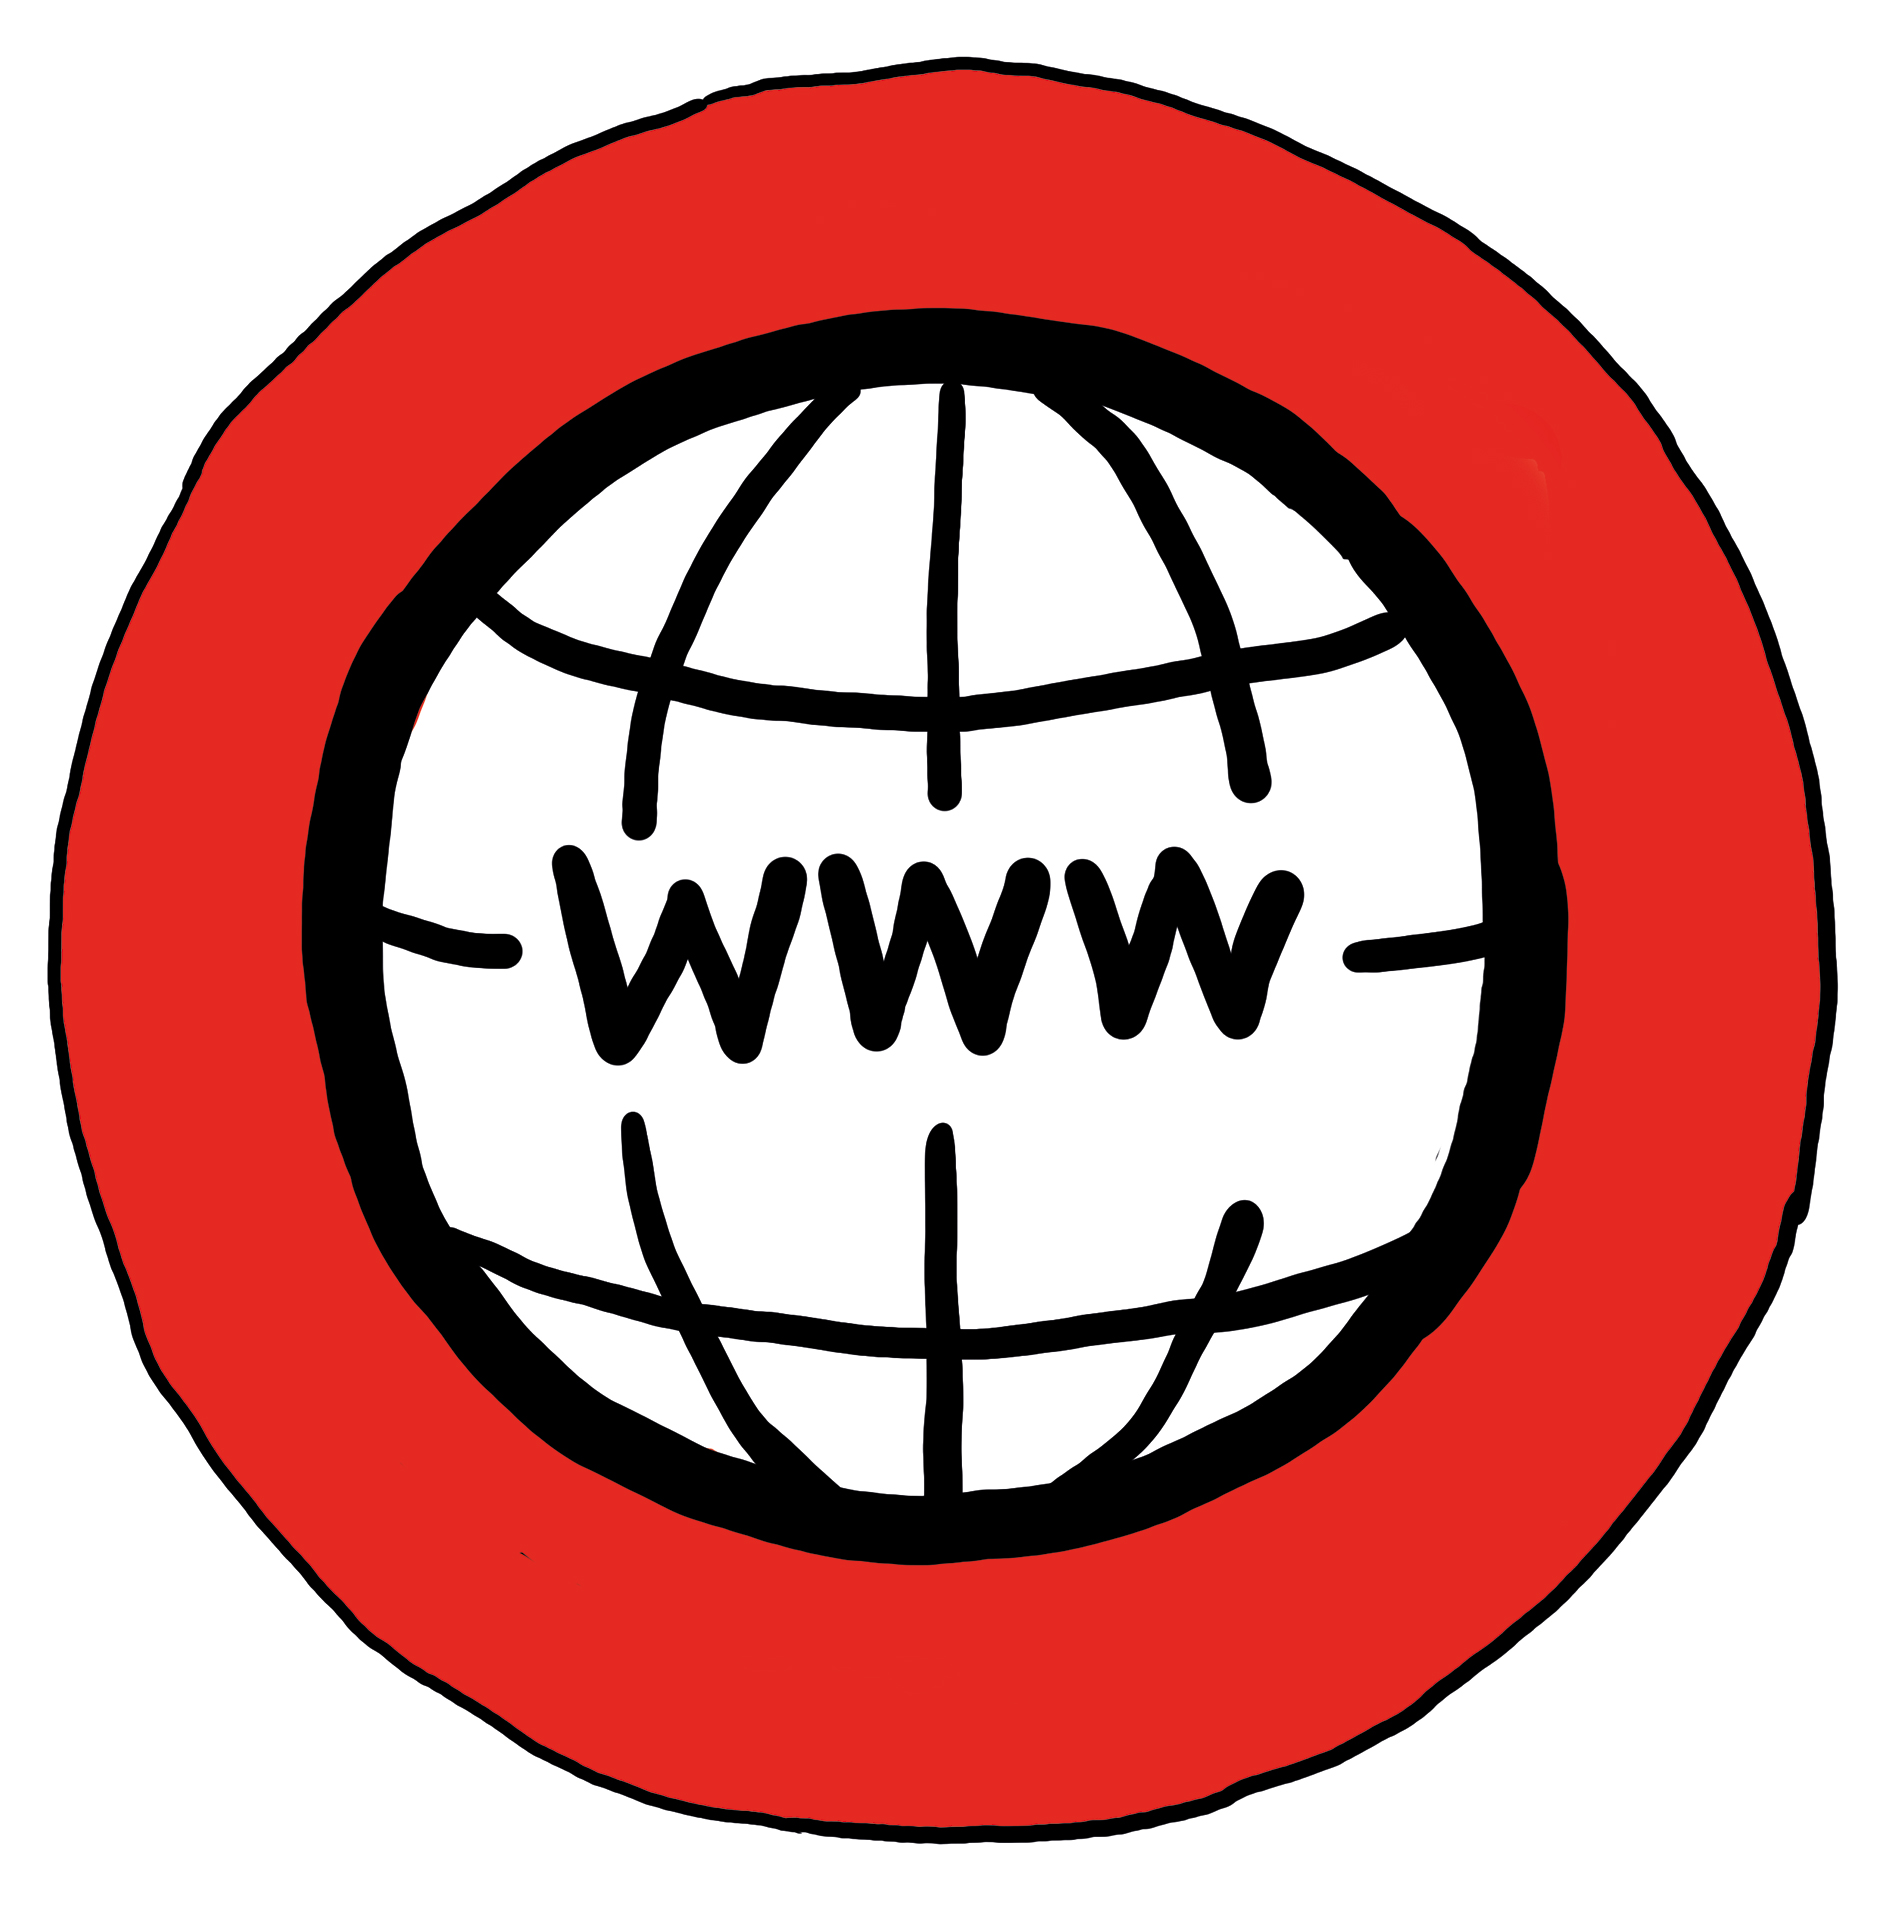 Ein schwarzer Kreis mit den Buchstaben WWW auf einem roten Kreis - Symbol für Internet-Adresse